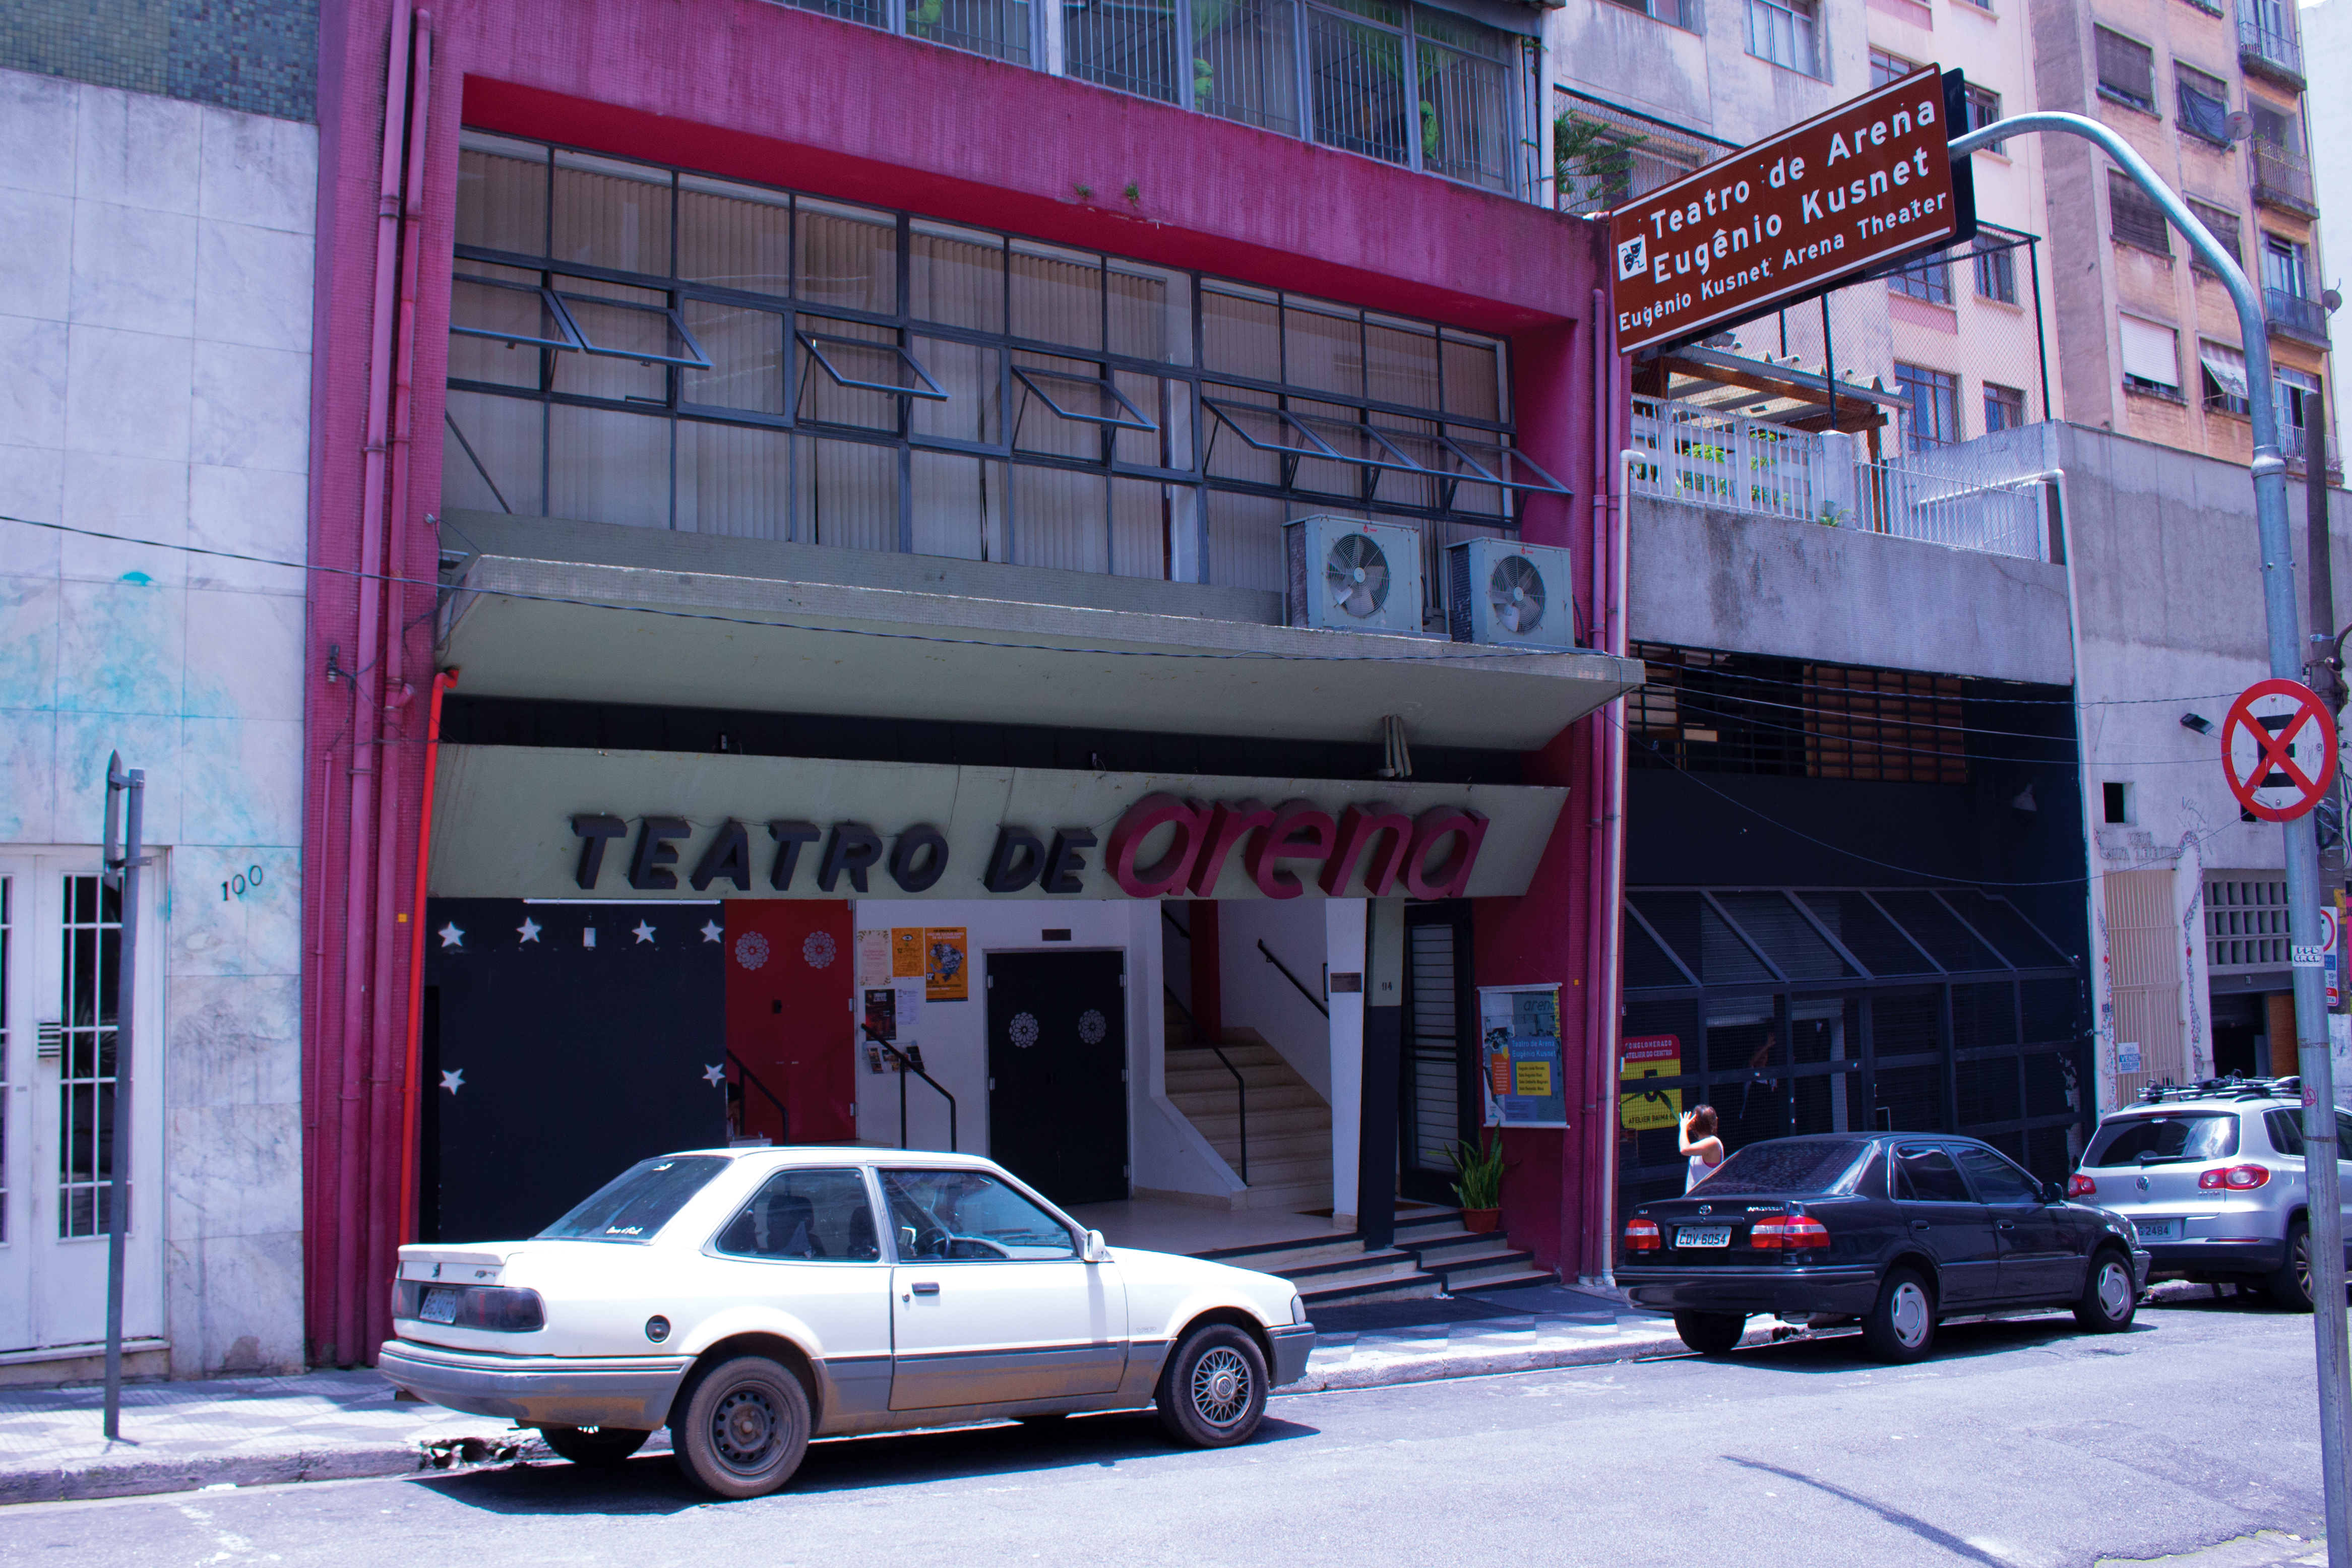 Oficina de Atores de São Paulo